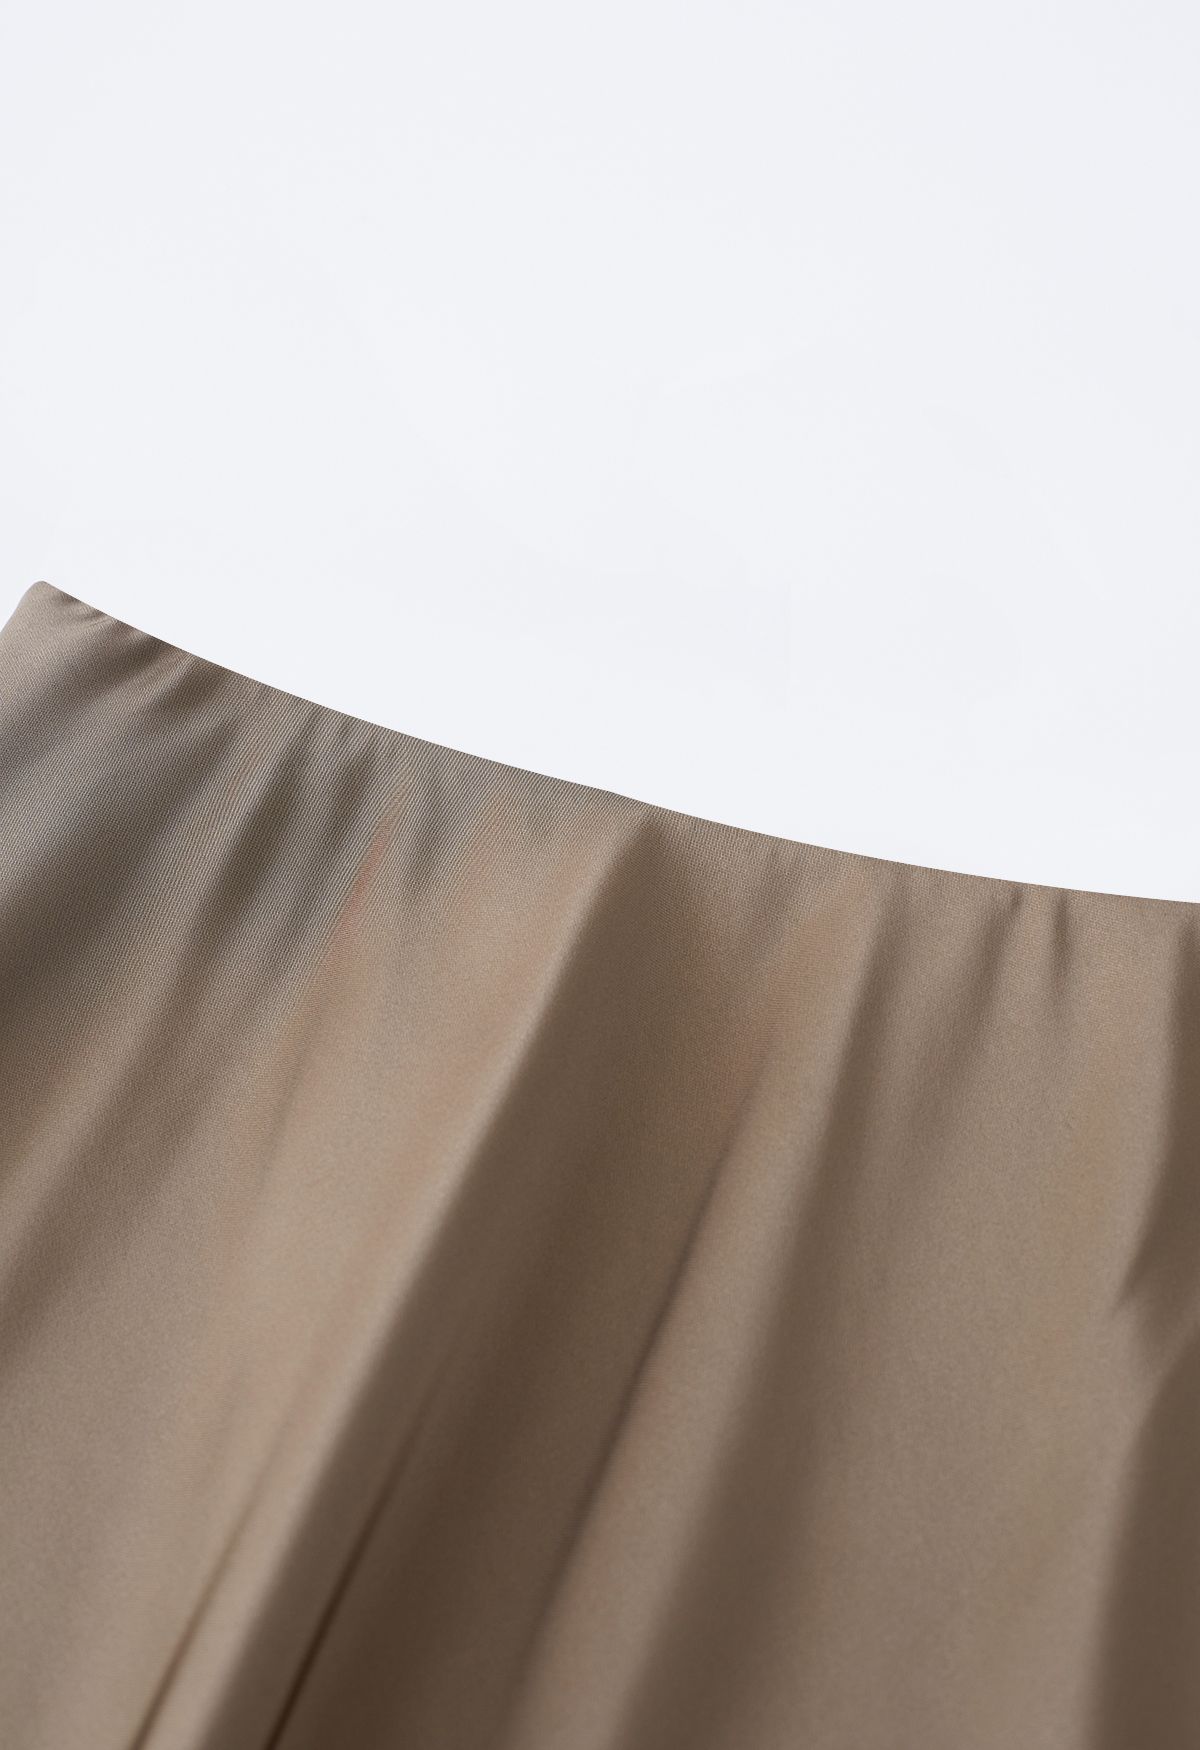 Falda larga de raso con dobladillo ventilado en tostado